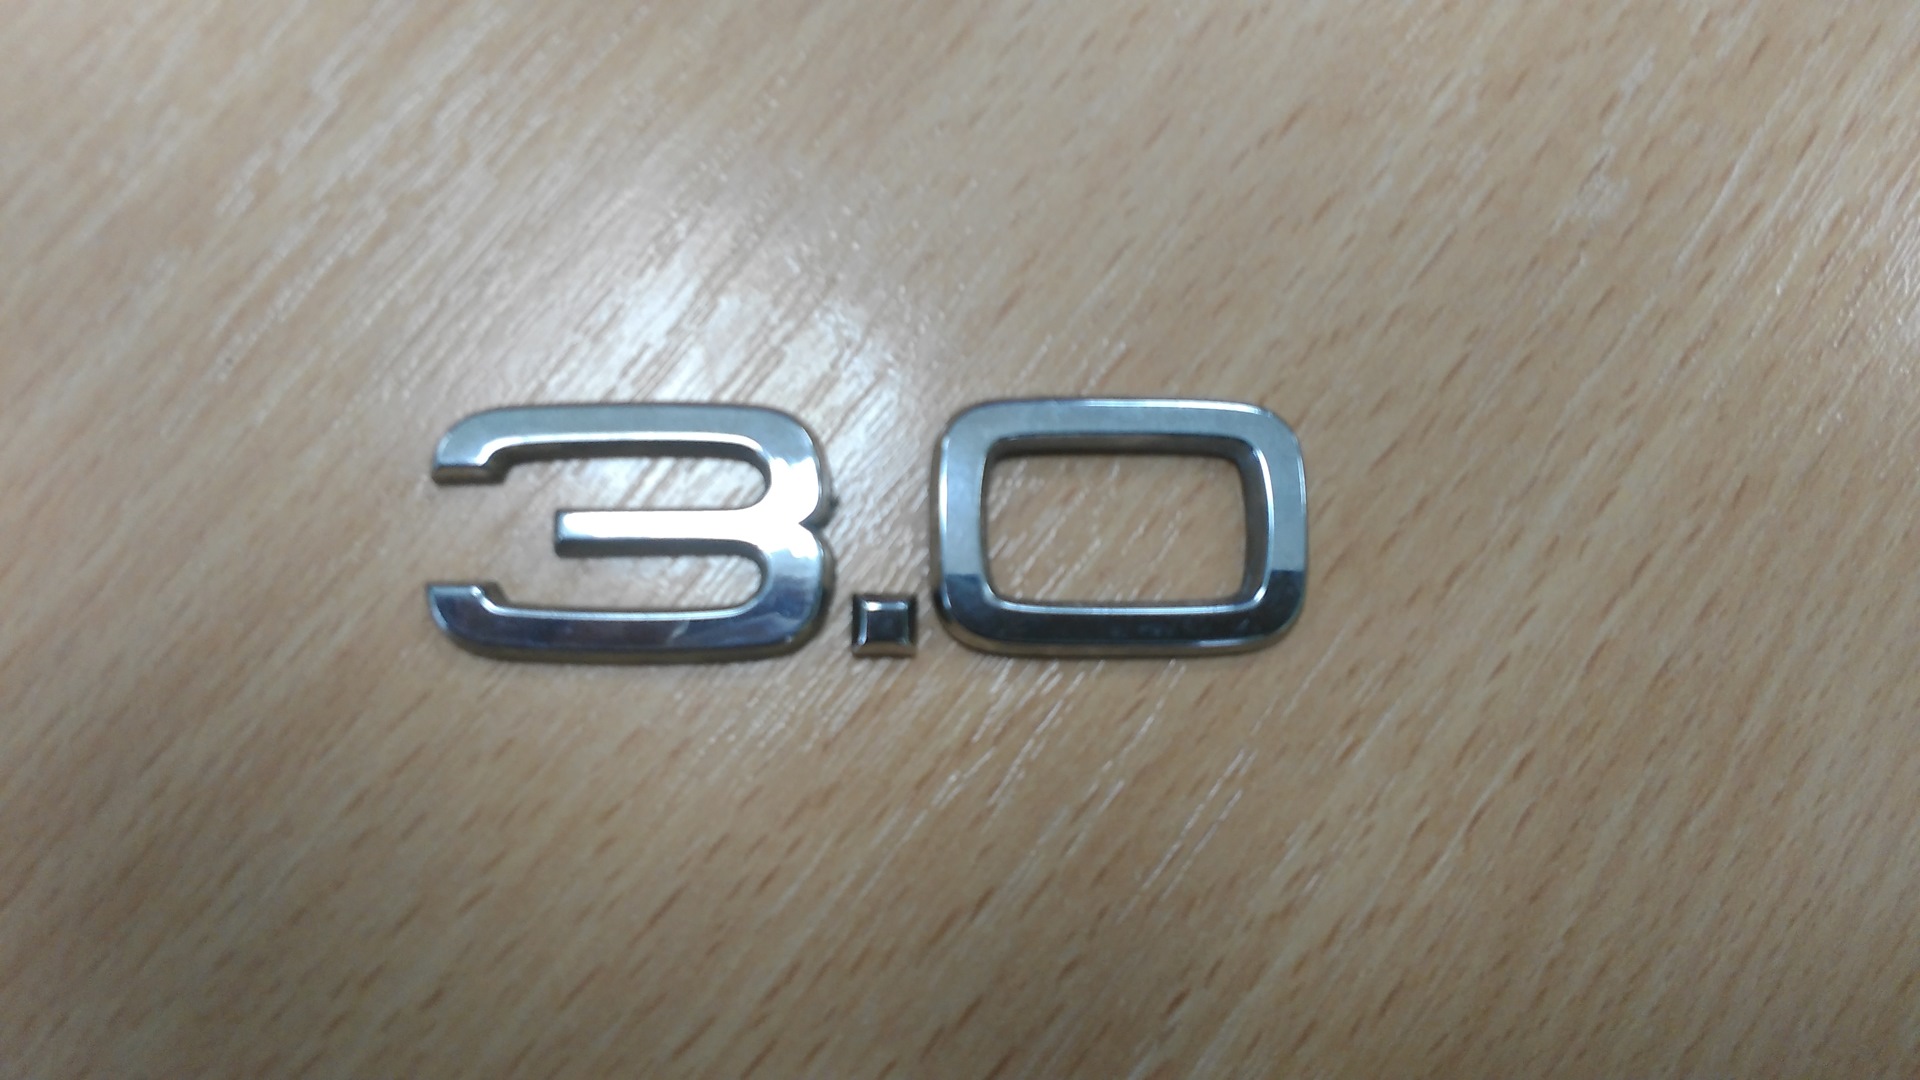 00 003. Шильдик Audi 3.0t. Шильдик 3.0 TDI. Шильдик Subaru 3.0. Шильдик 3.0 CDI.